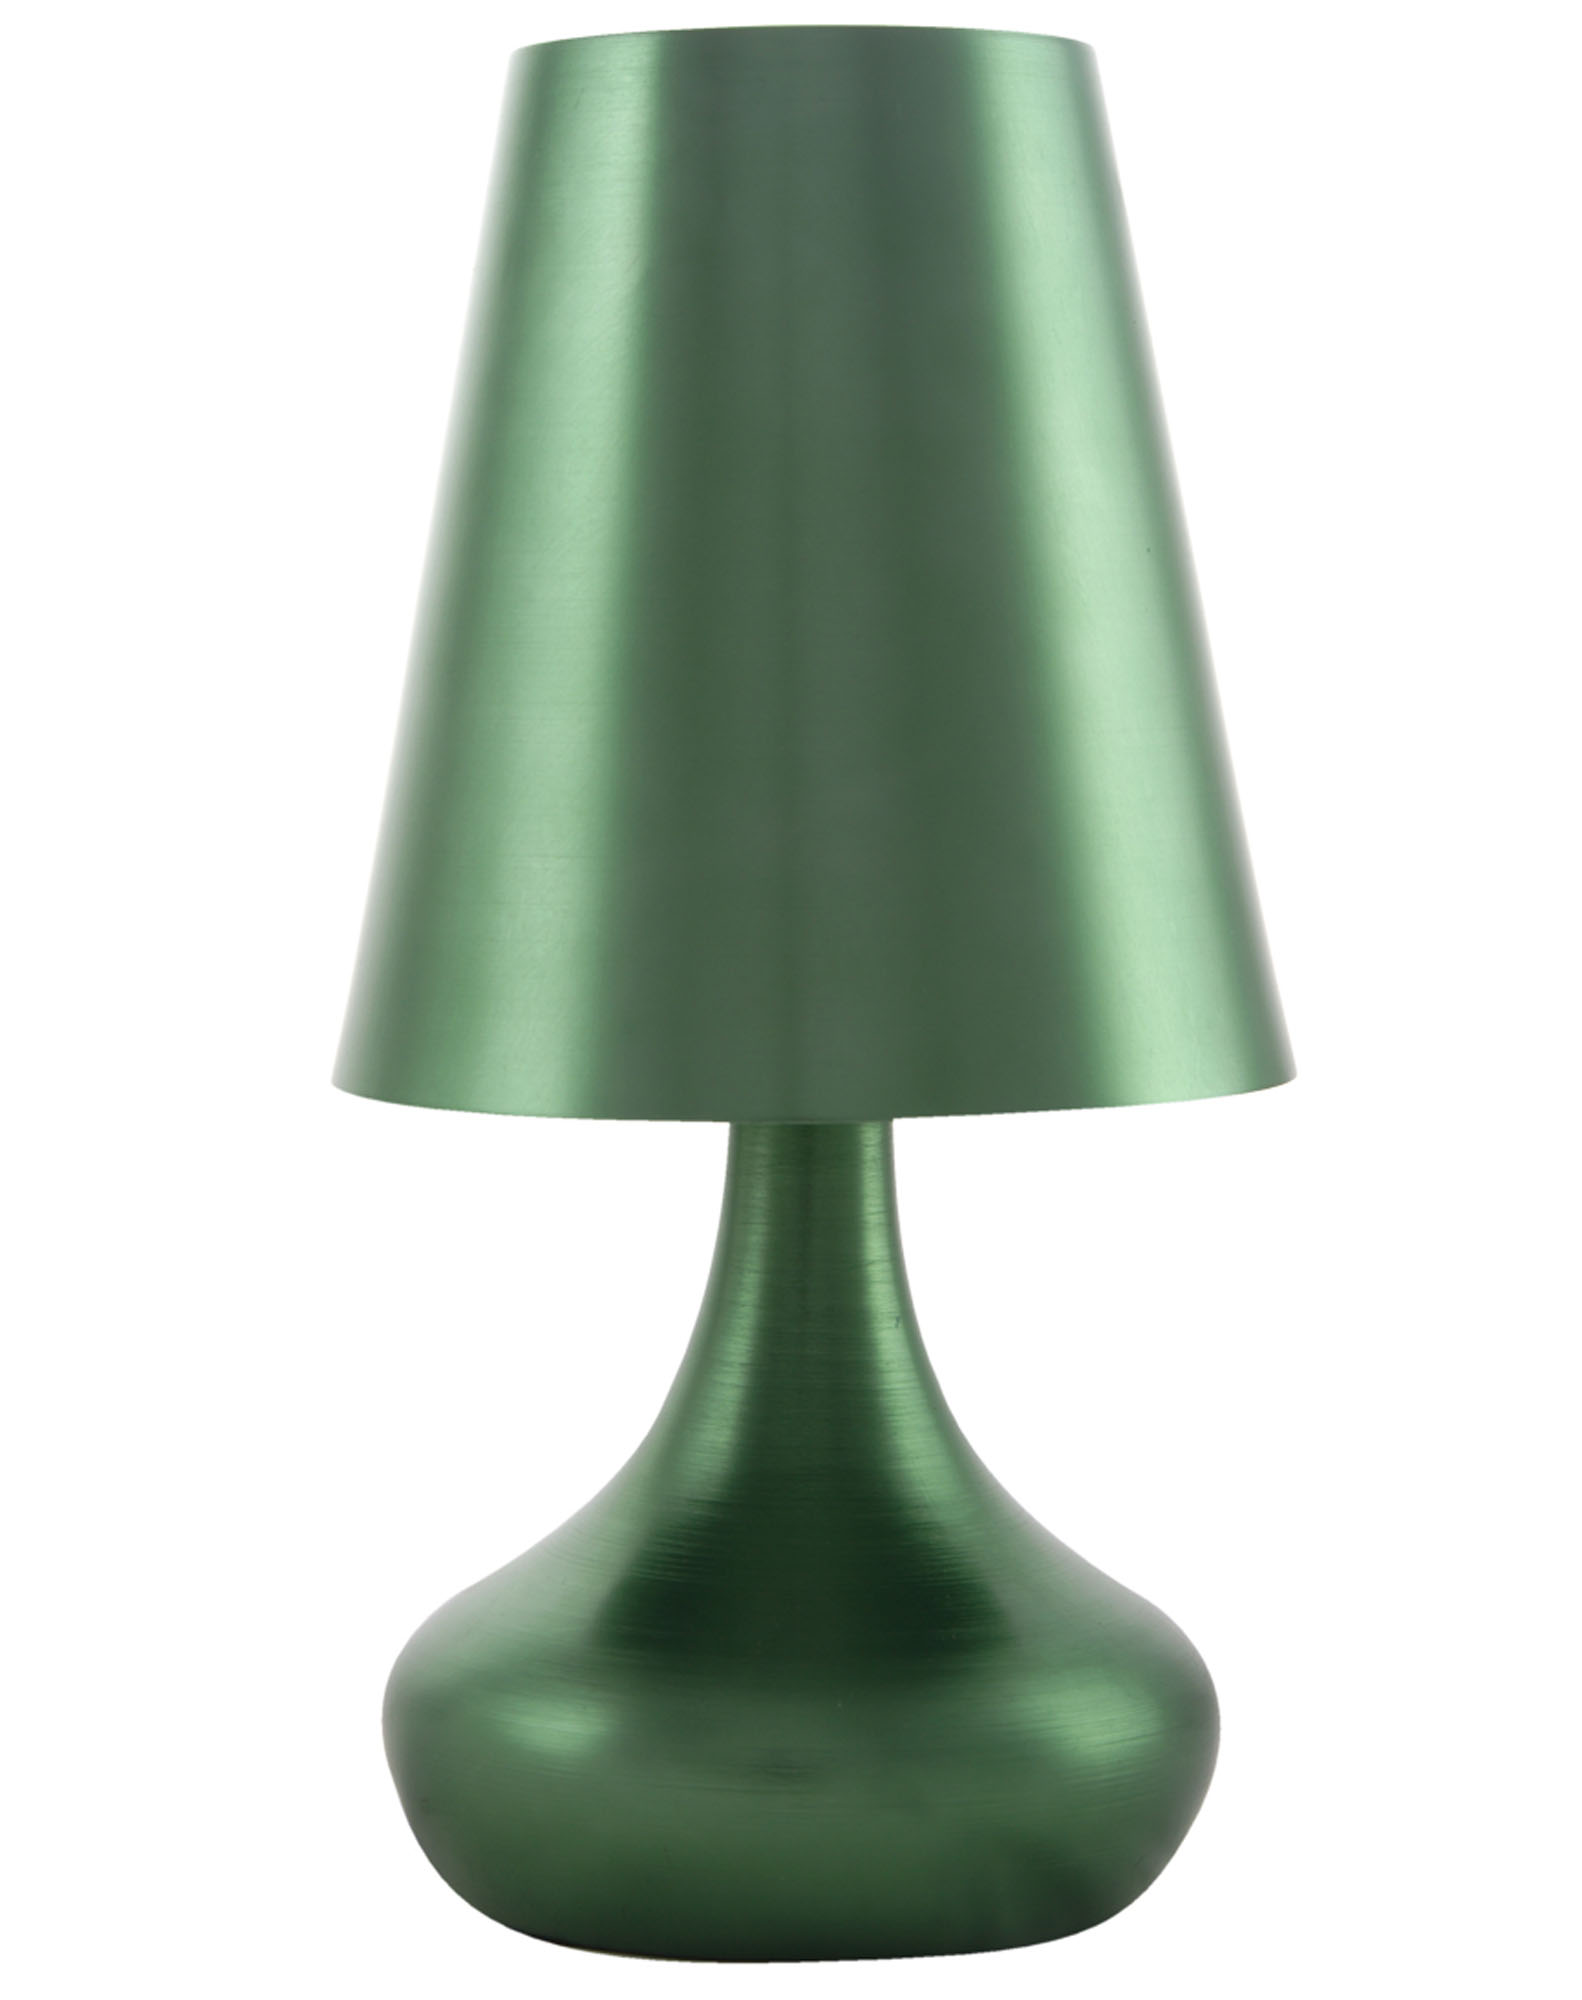 Litecraft Zany Green Aluminium Table Lamp